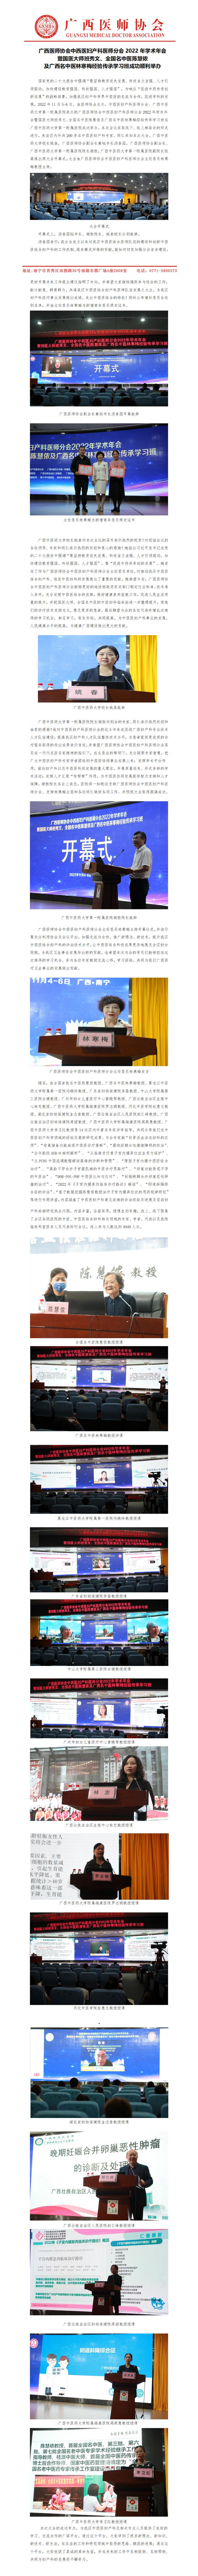 2022年中西医结合妇产科分会新闻稿 - 协会(1)_01.jpg